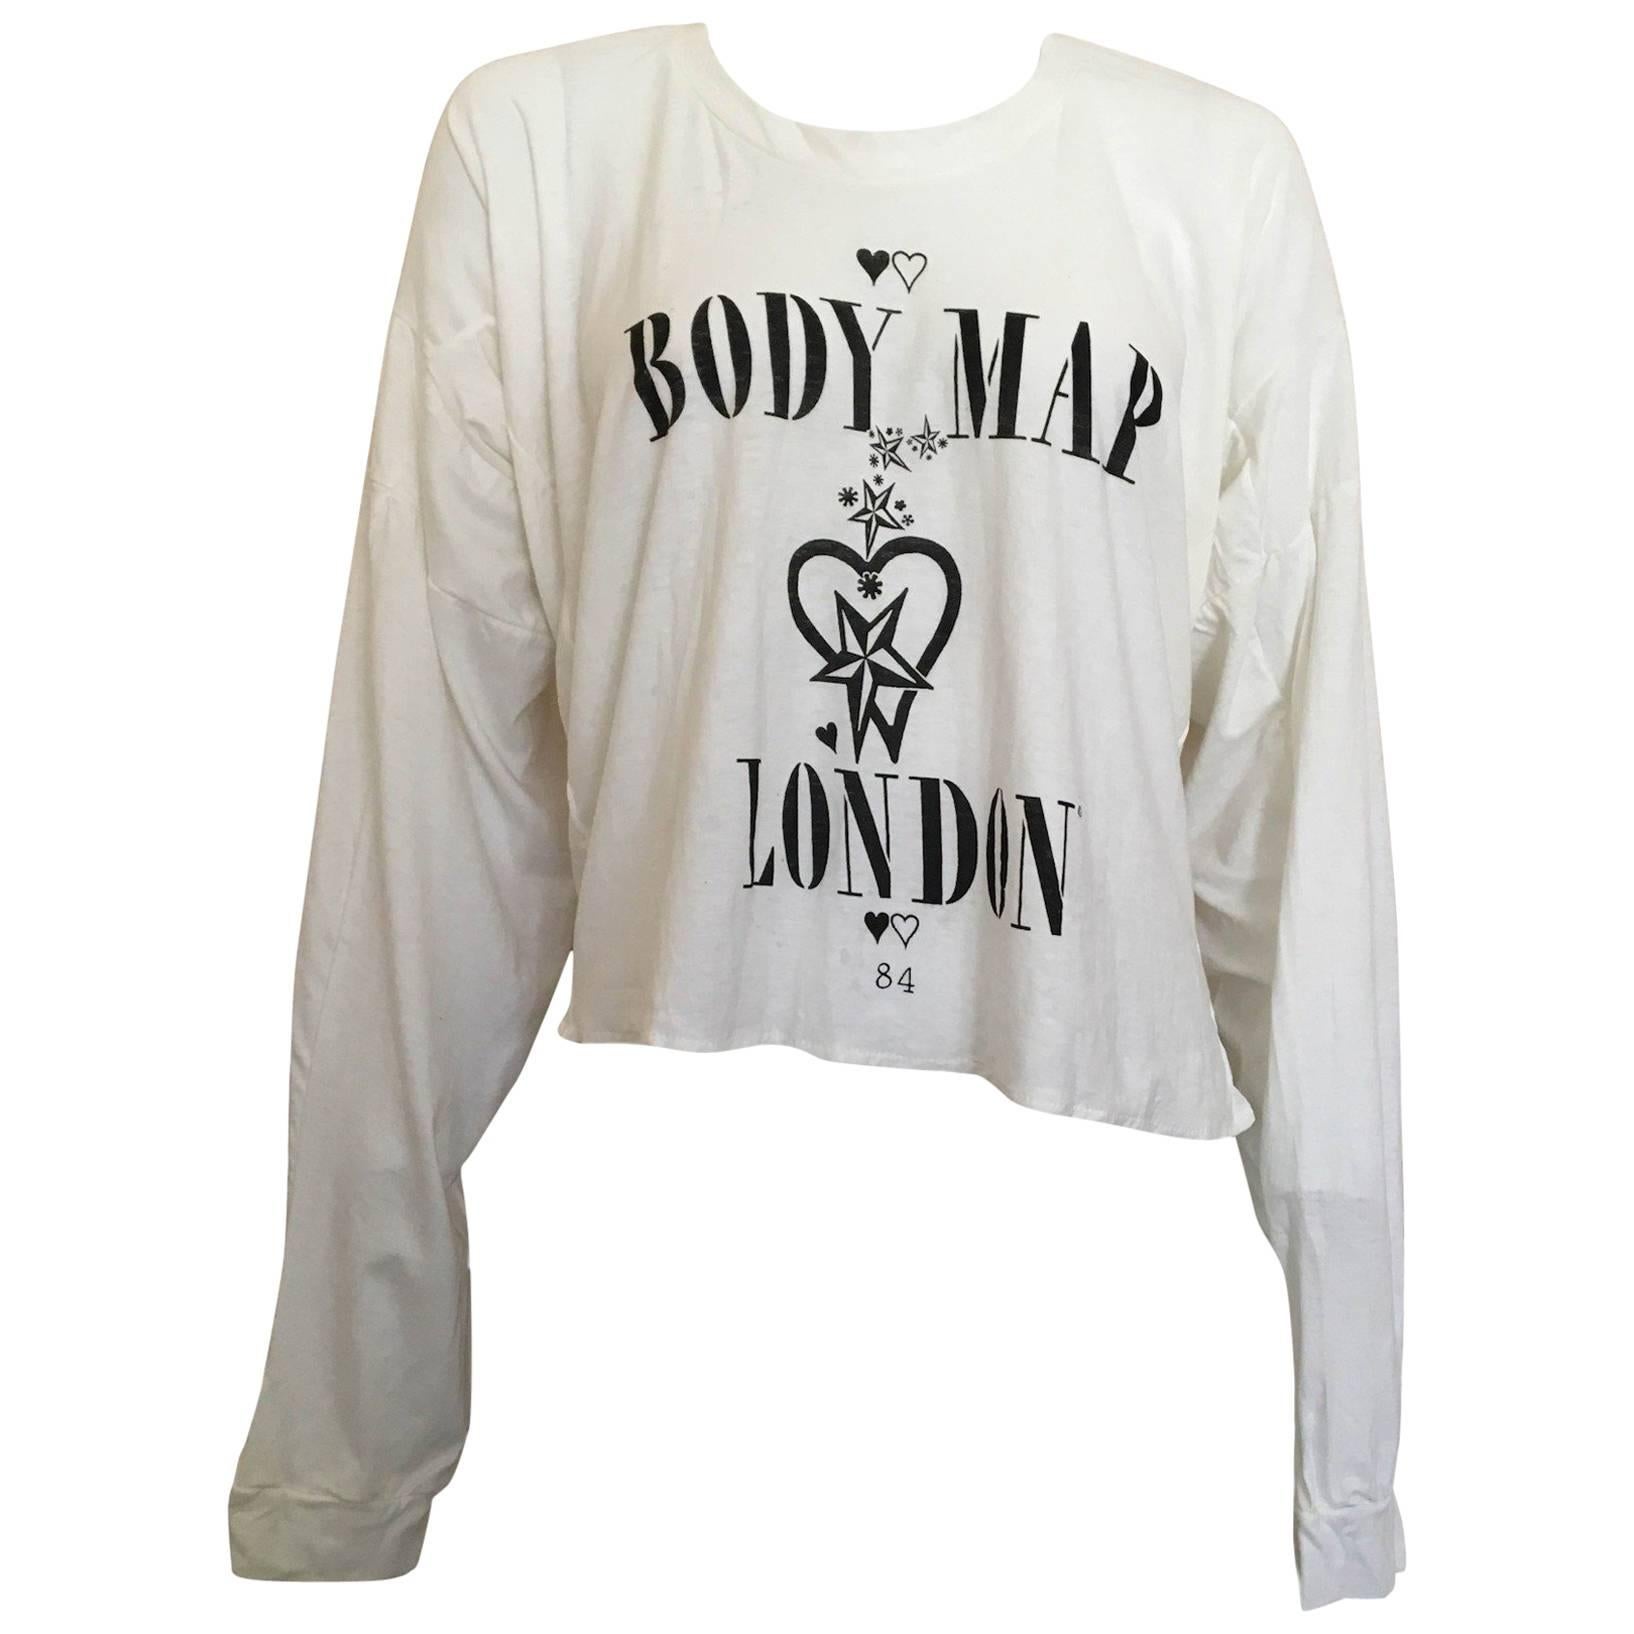  Bodymap 1984 Irregular Fit T Shirt Punk London Small